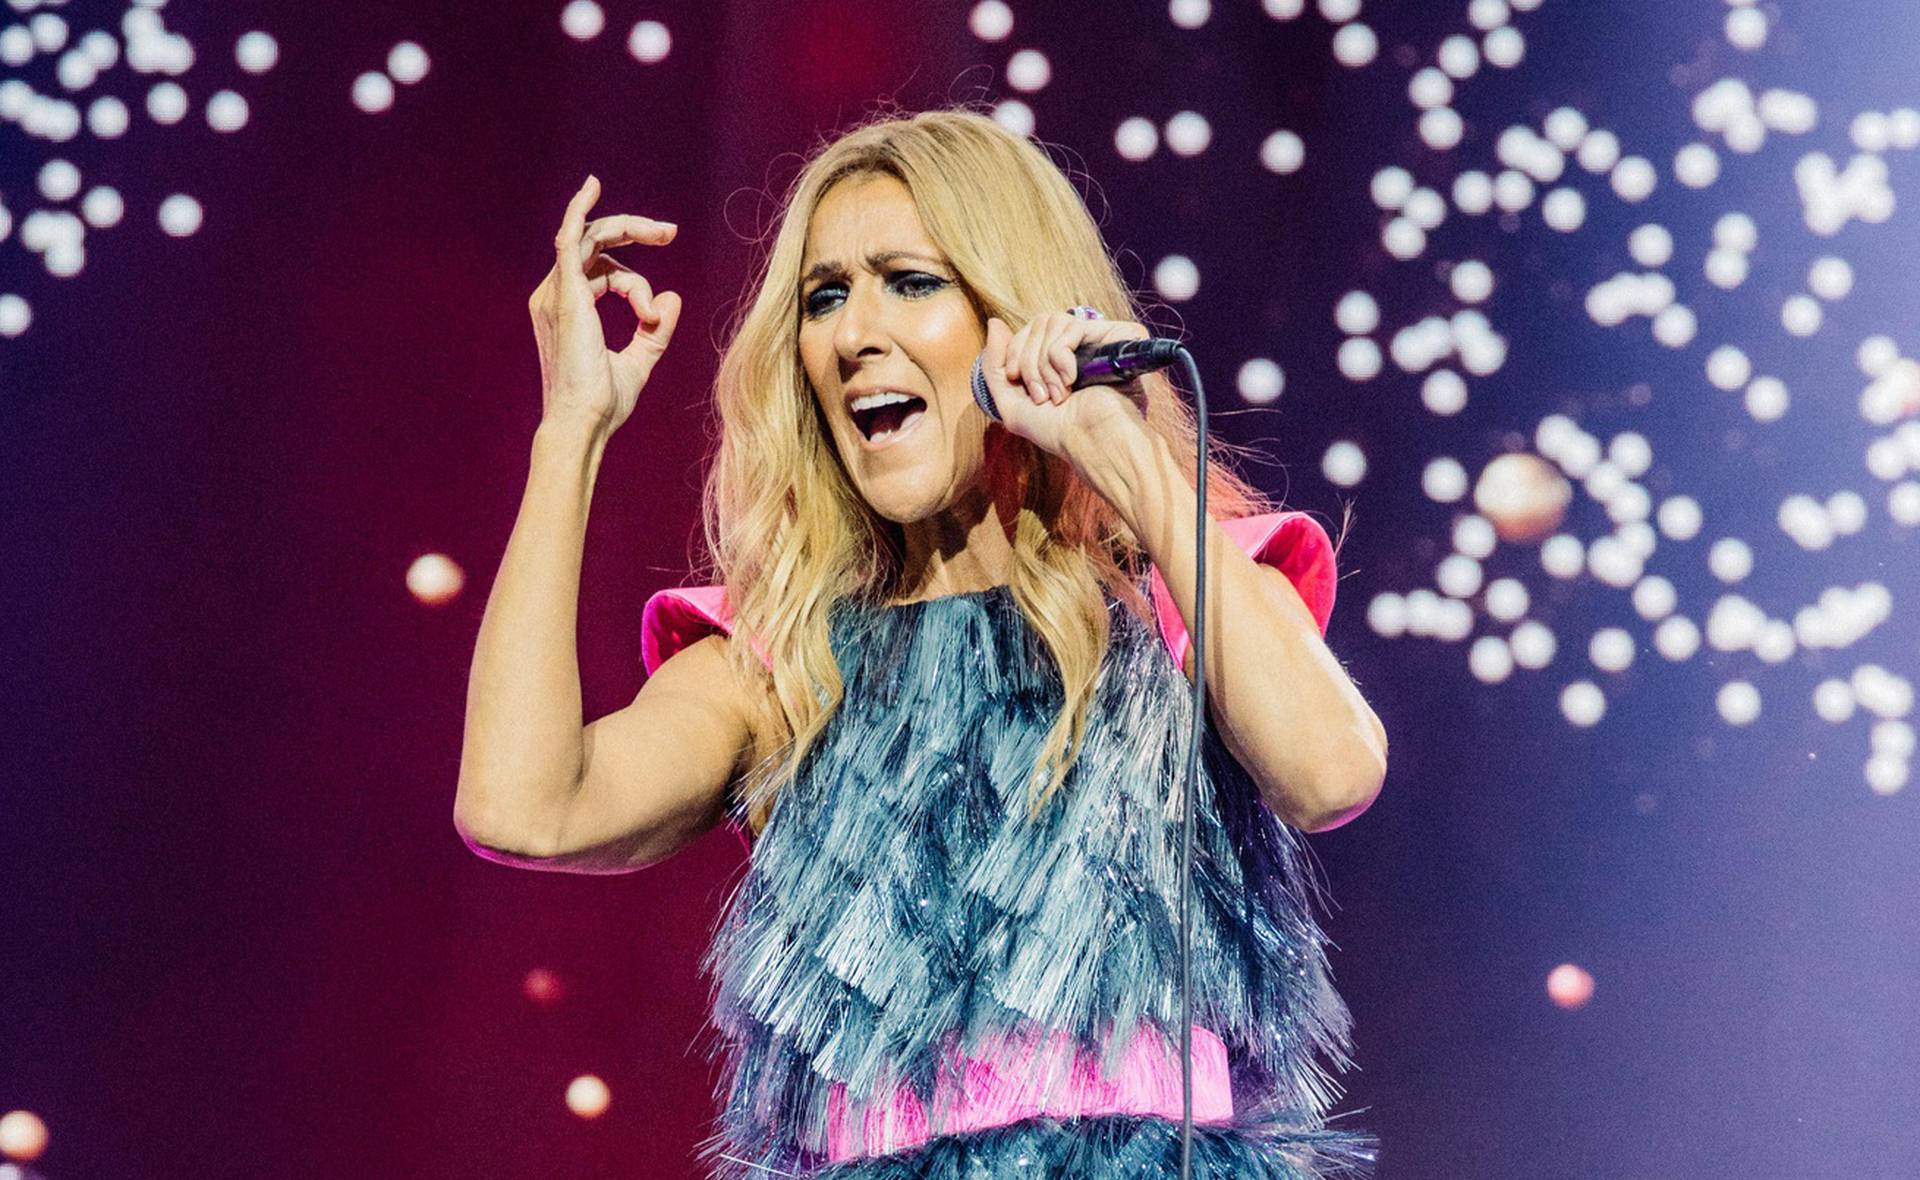 Rolling Stone naljutio čitatelje: S popisa 200 najvećih pjevača ikad izostavili su Celine Dion